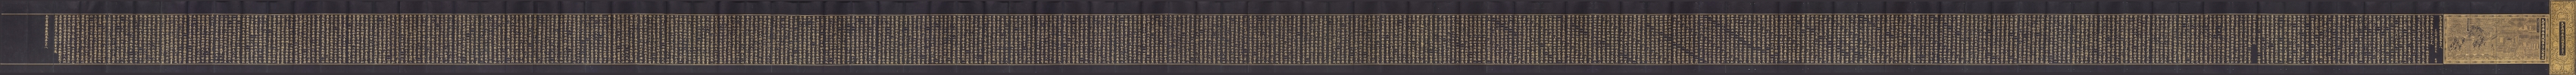 Avatamsaka Sutra No. 78